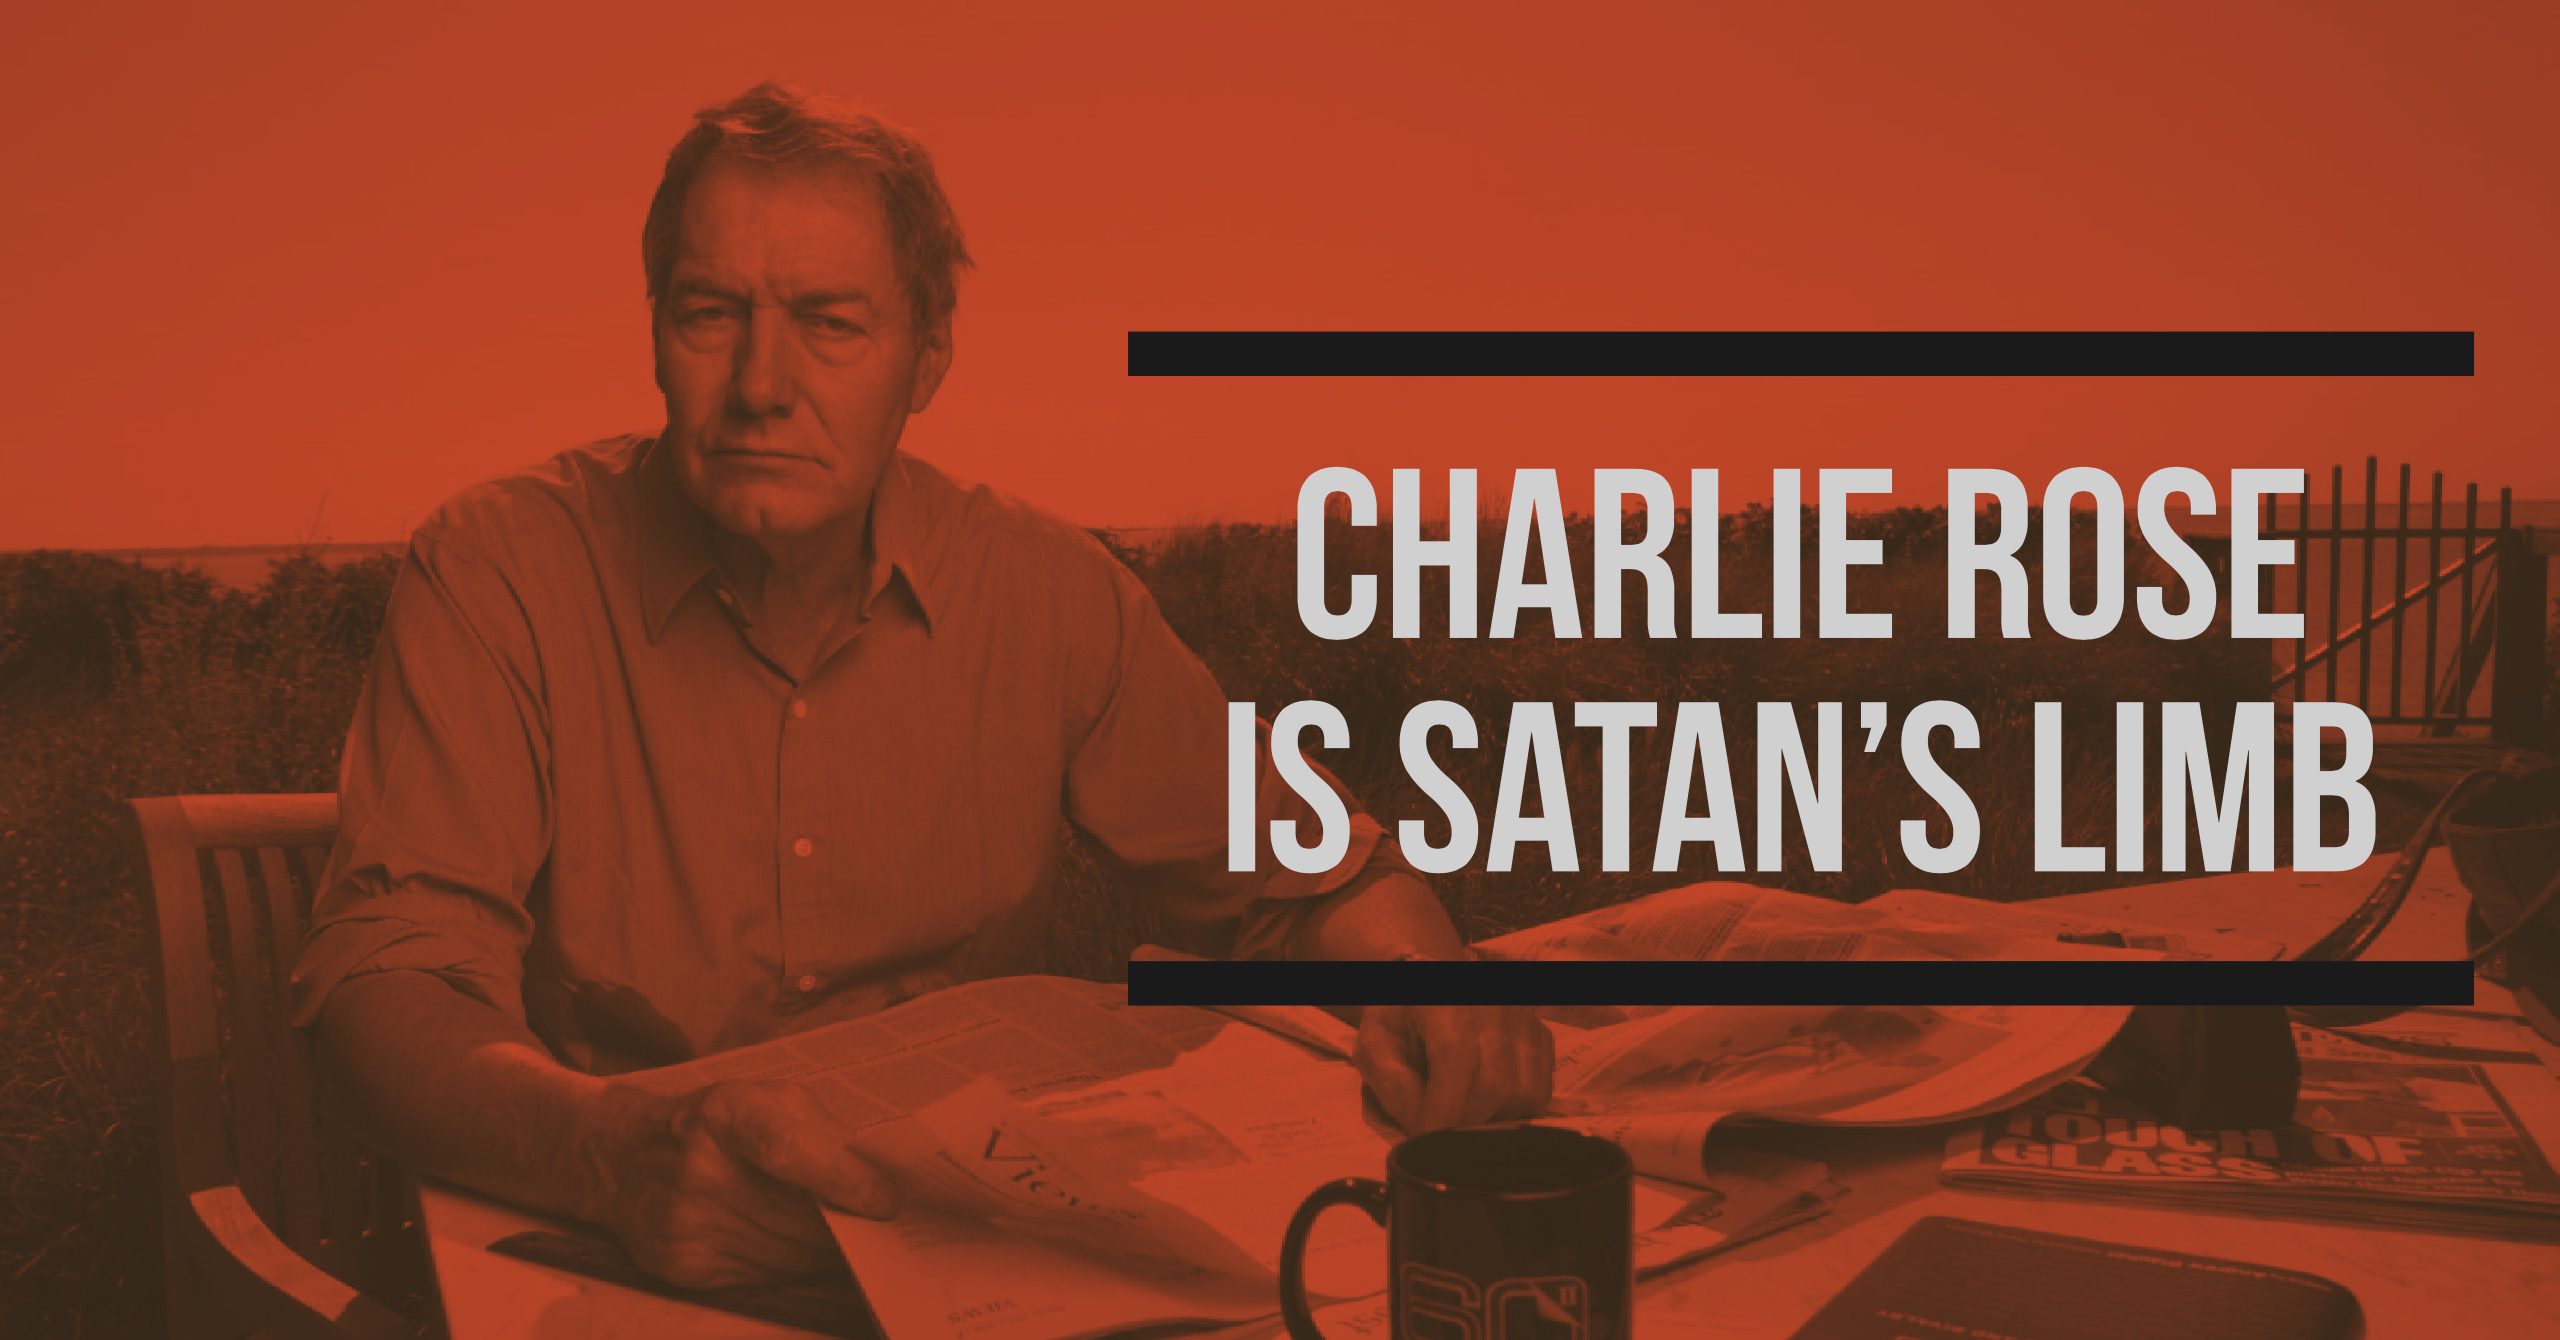 Charlie Rose is Satan